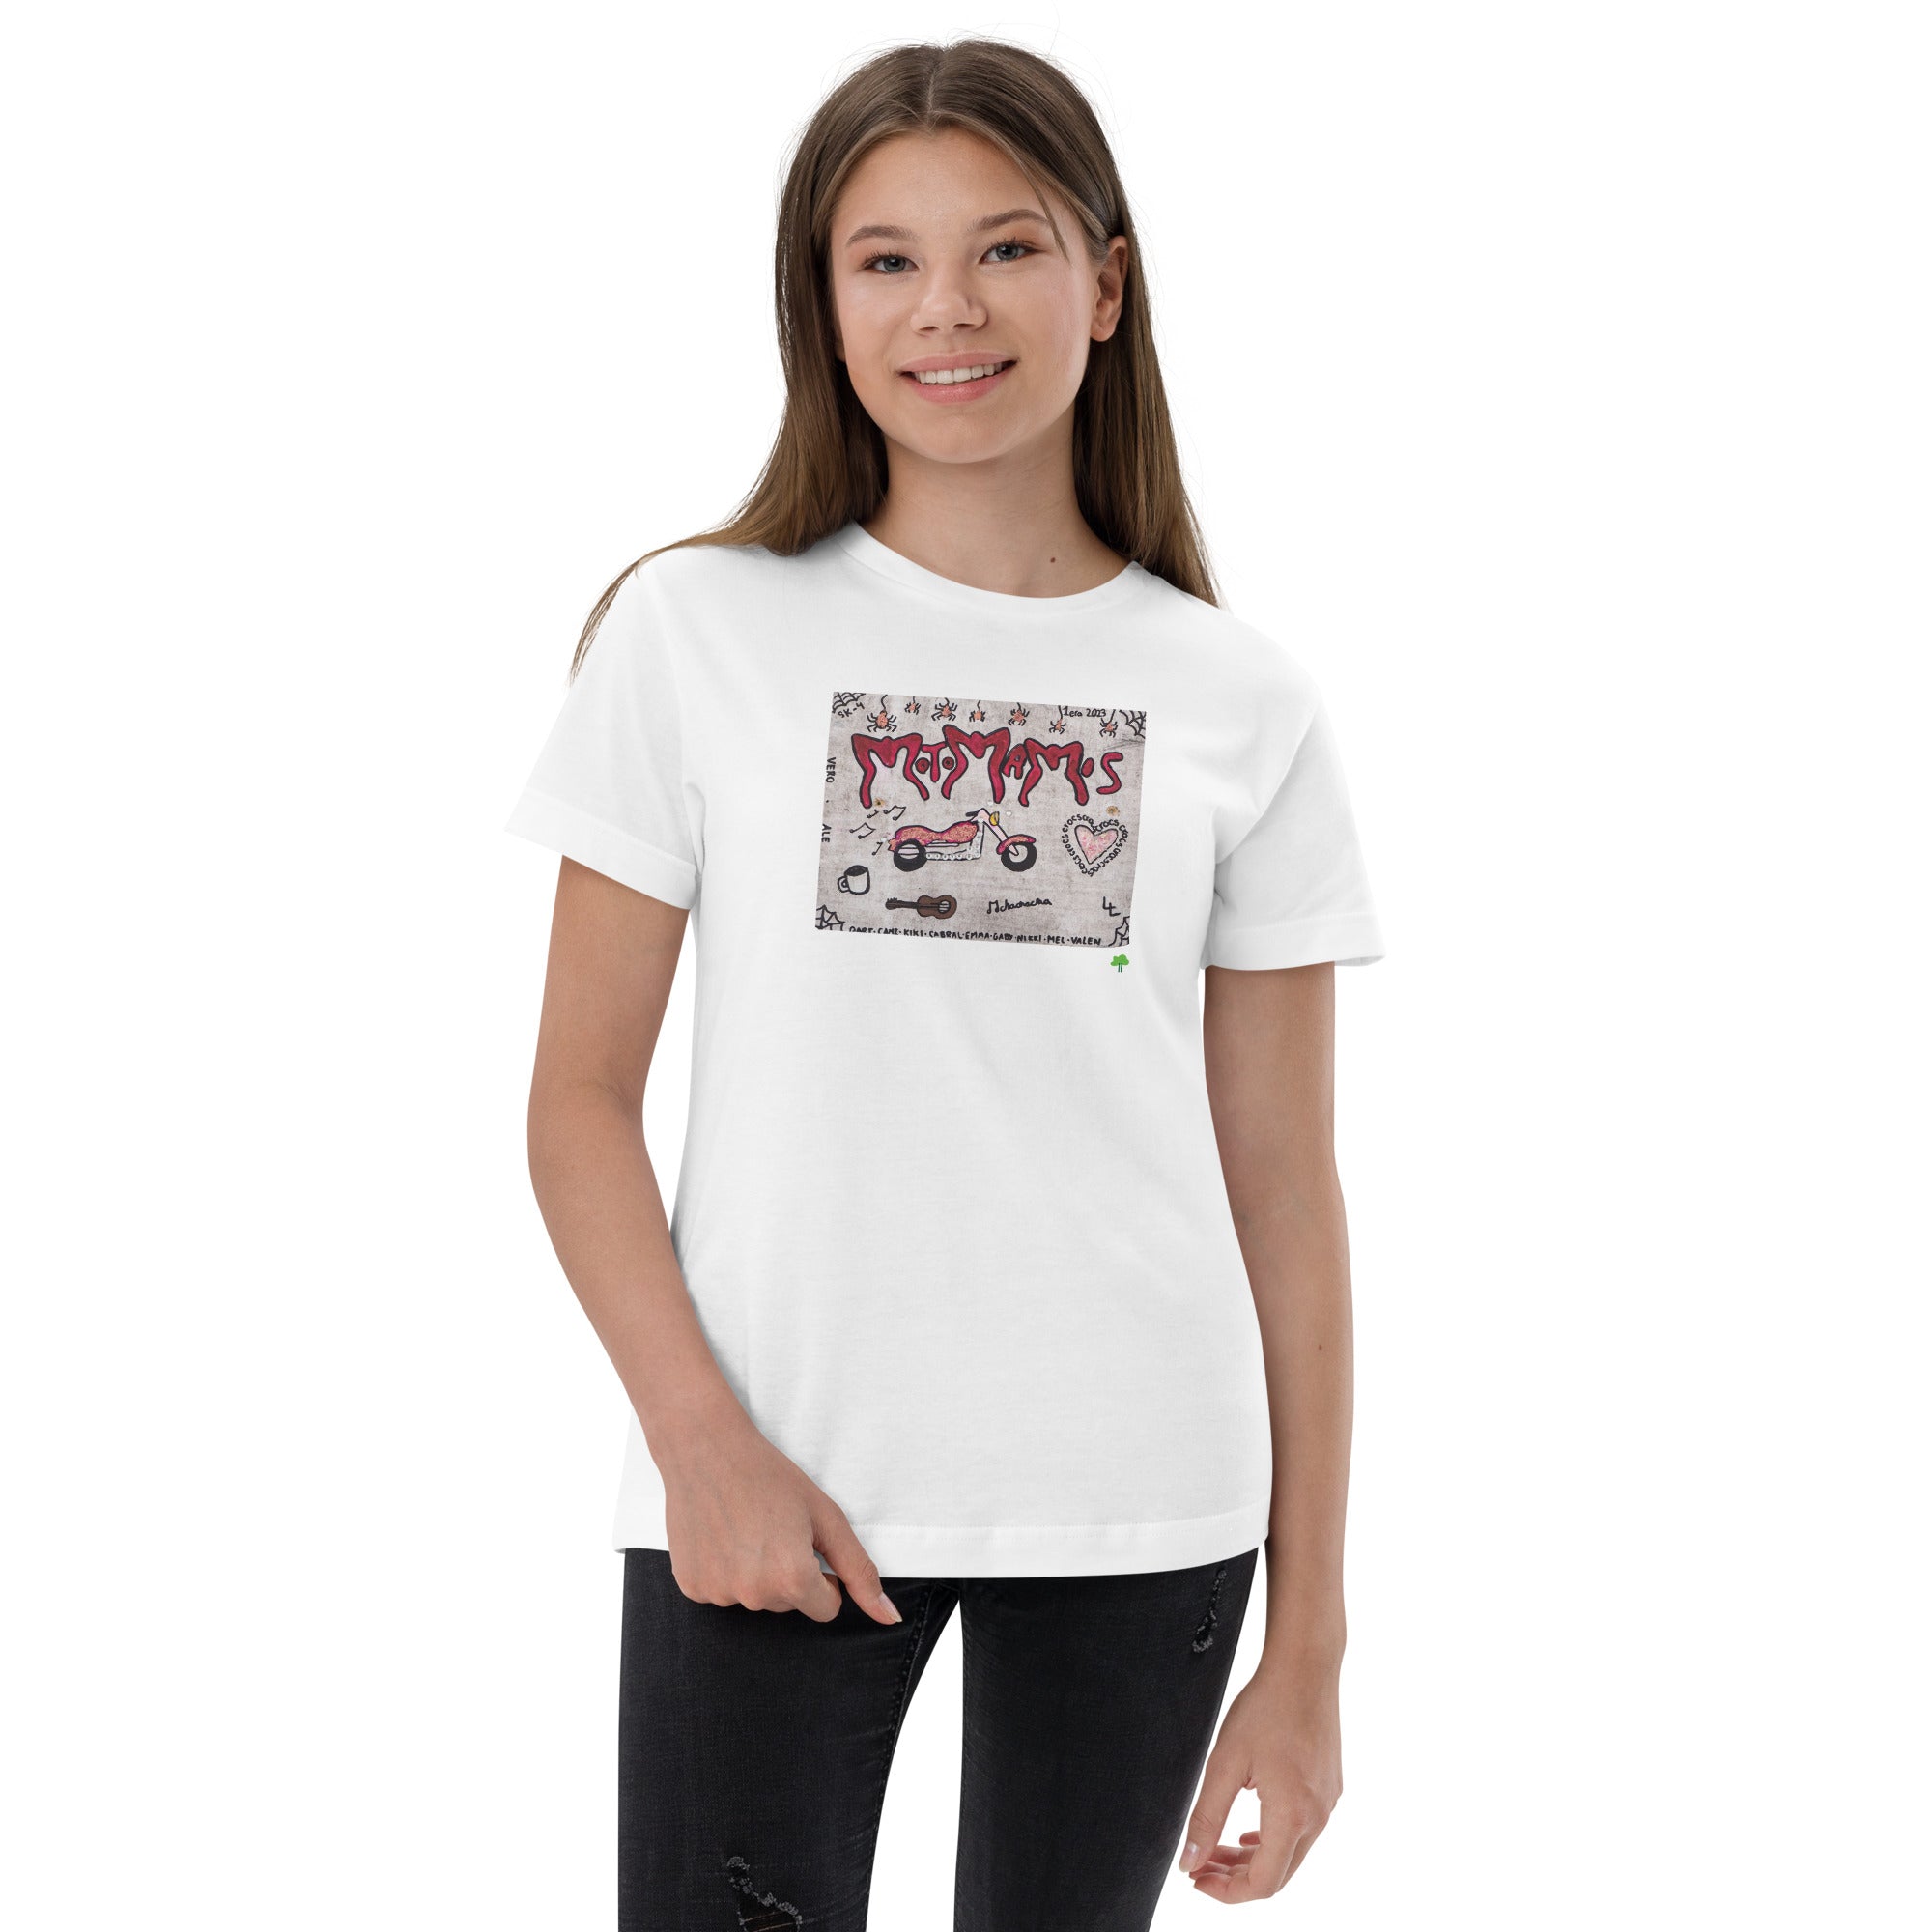 I Temp - Sabana - K14 | Youth jersey t-shirt